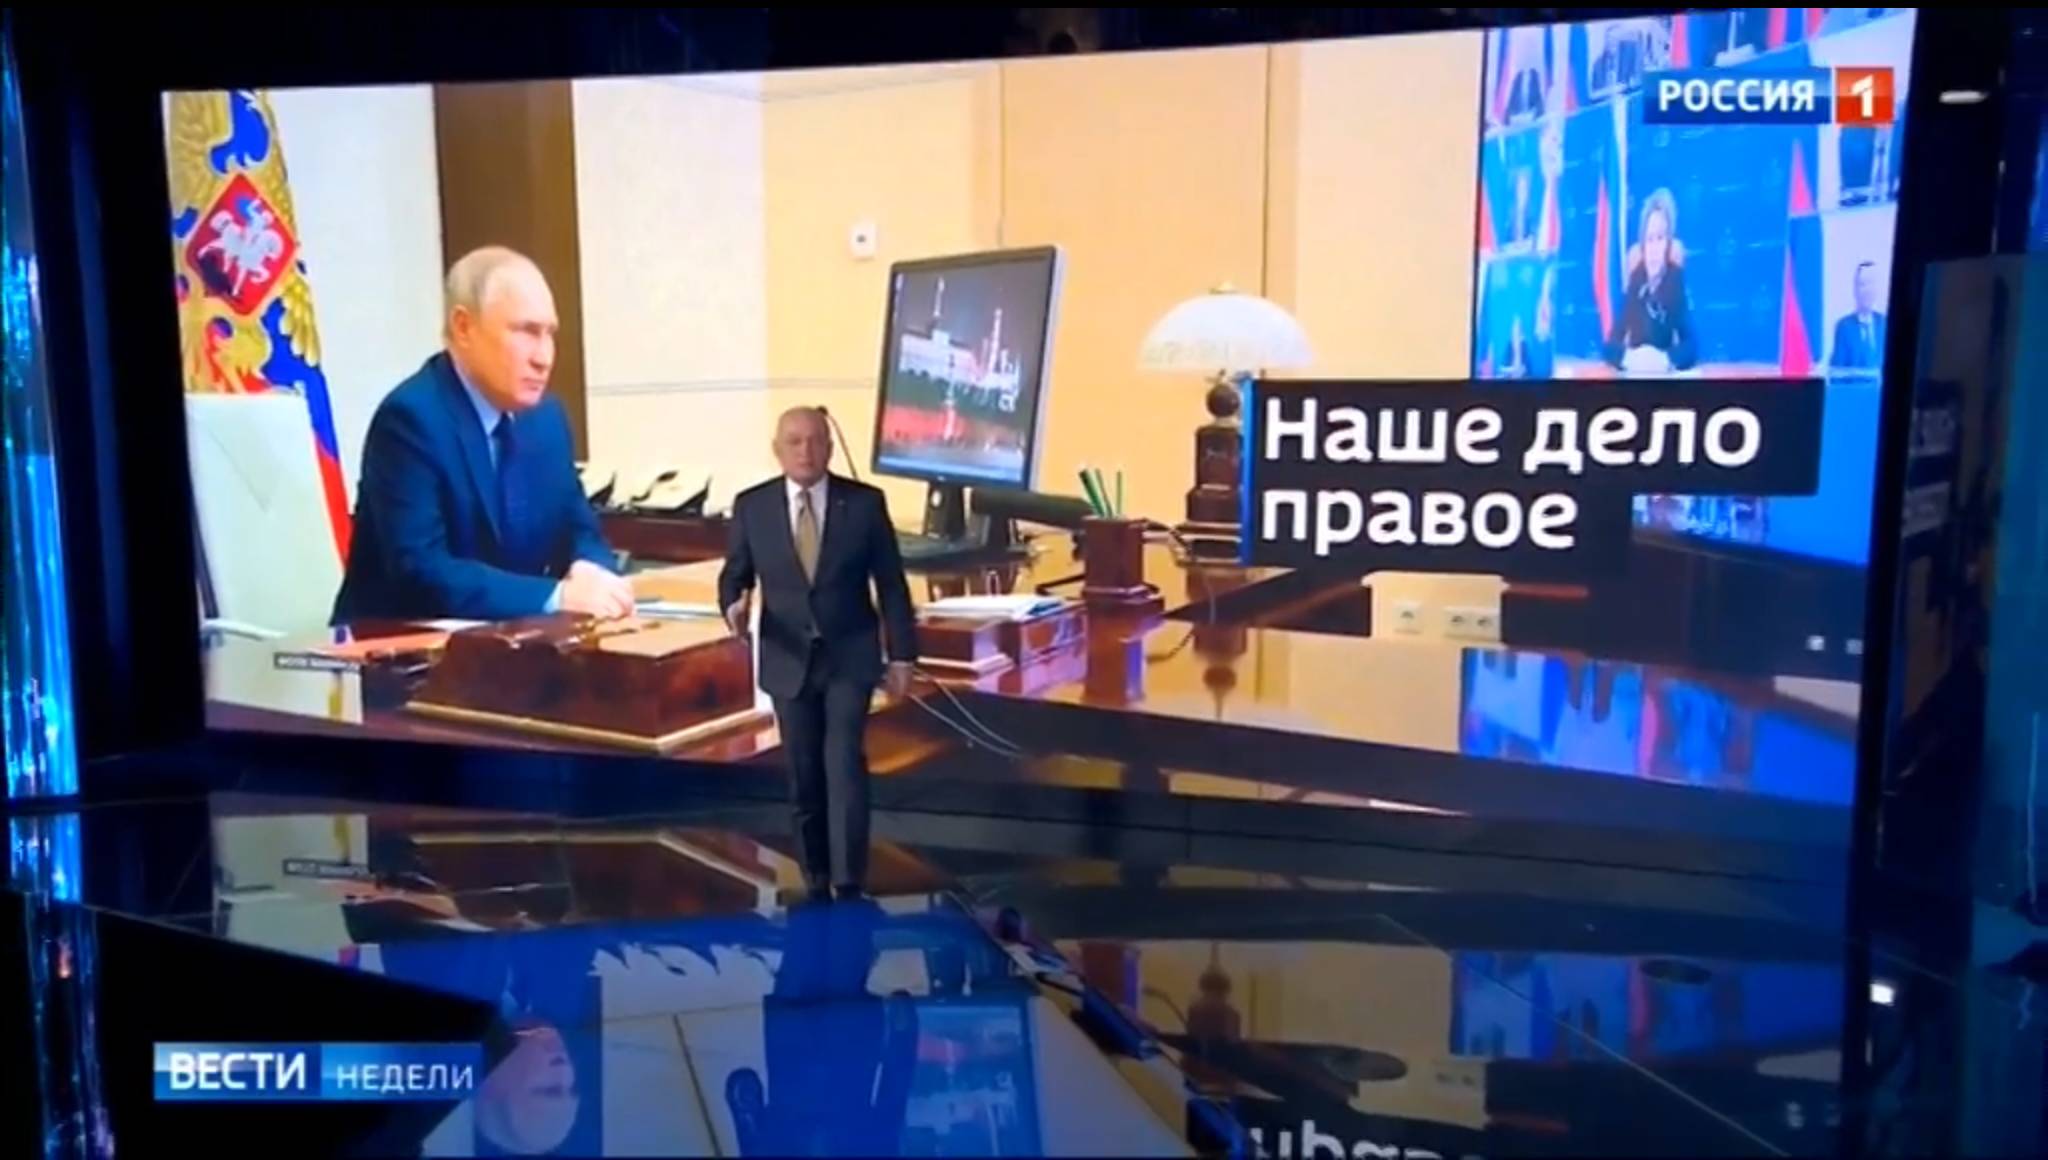 Studio telewizyjne. Prowadzący na pierwszym planie, w tle - zdjęcie Putina prowadzącego telekonferencję